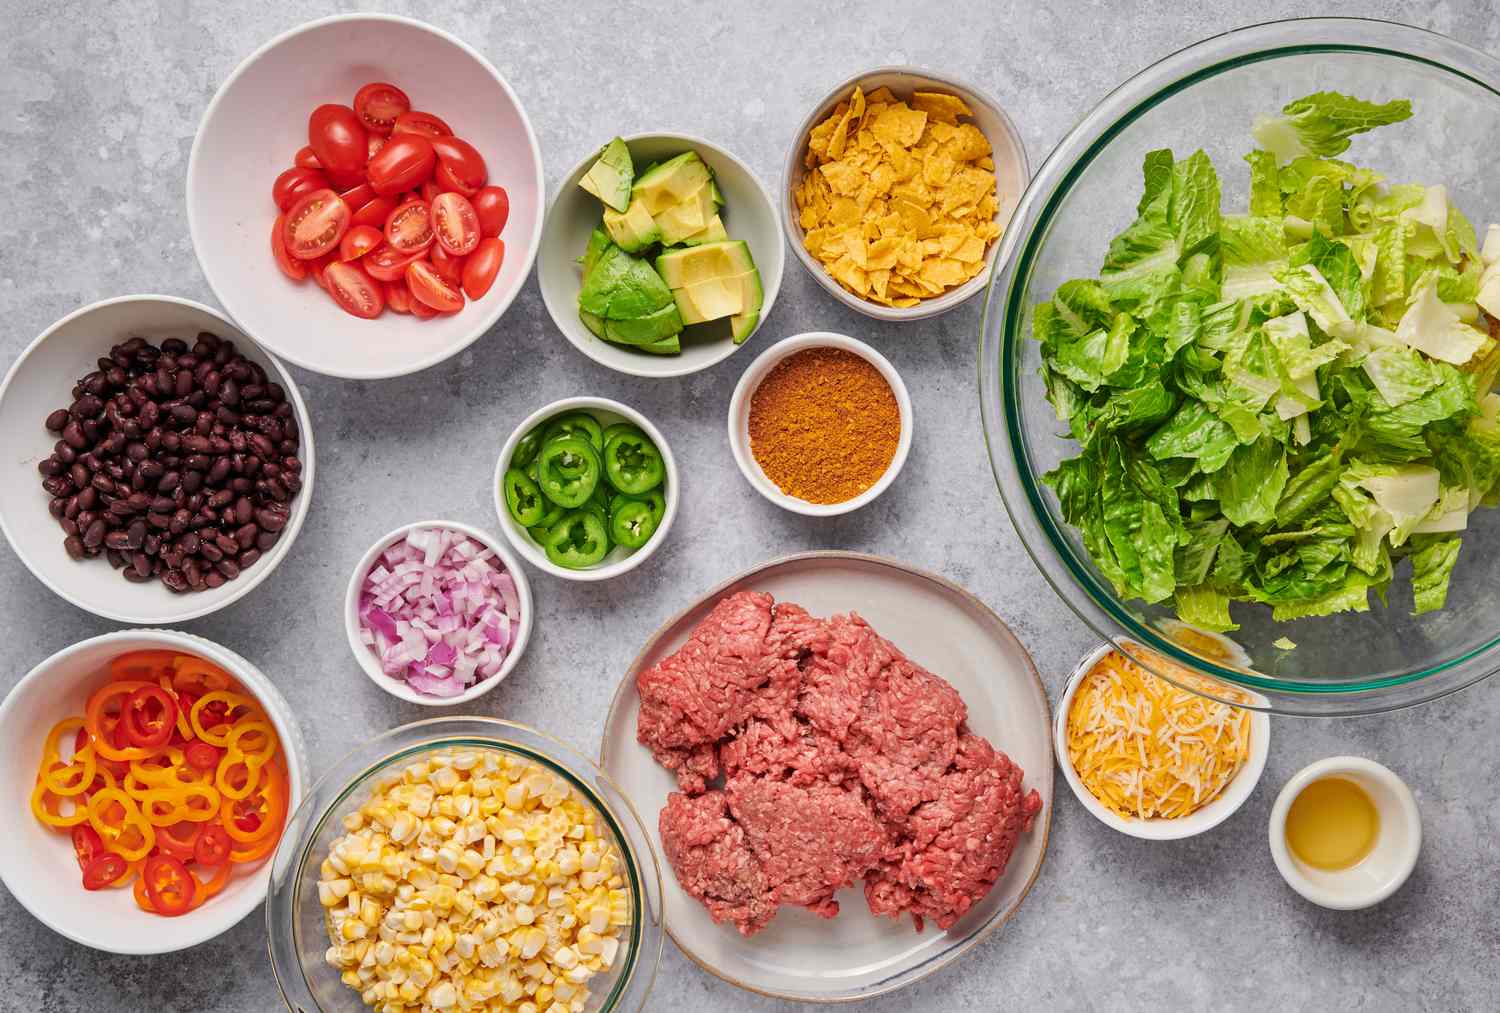 Ingredients to make taco salad